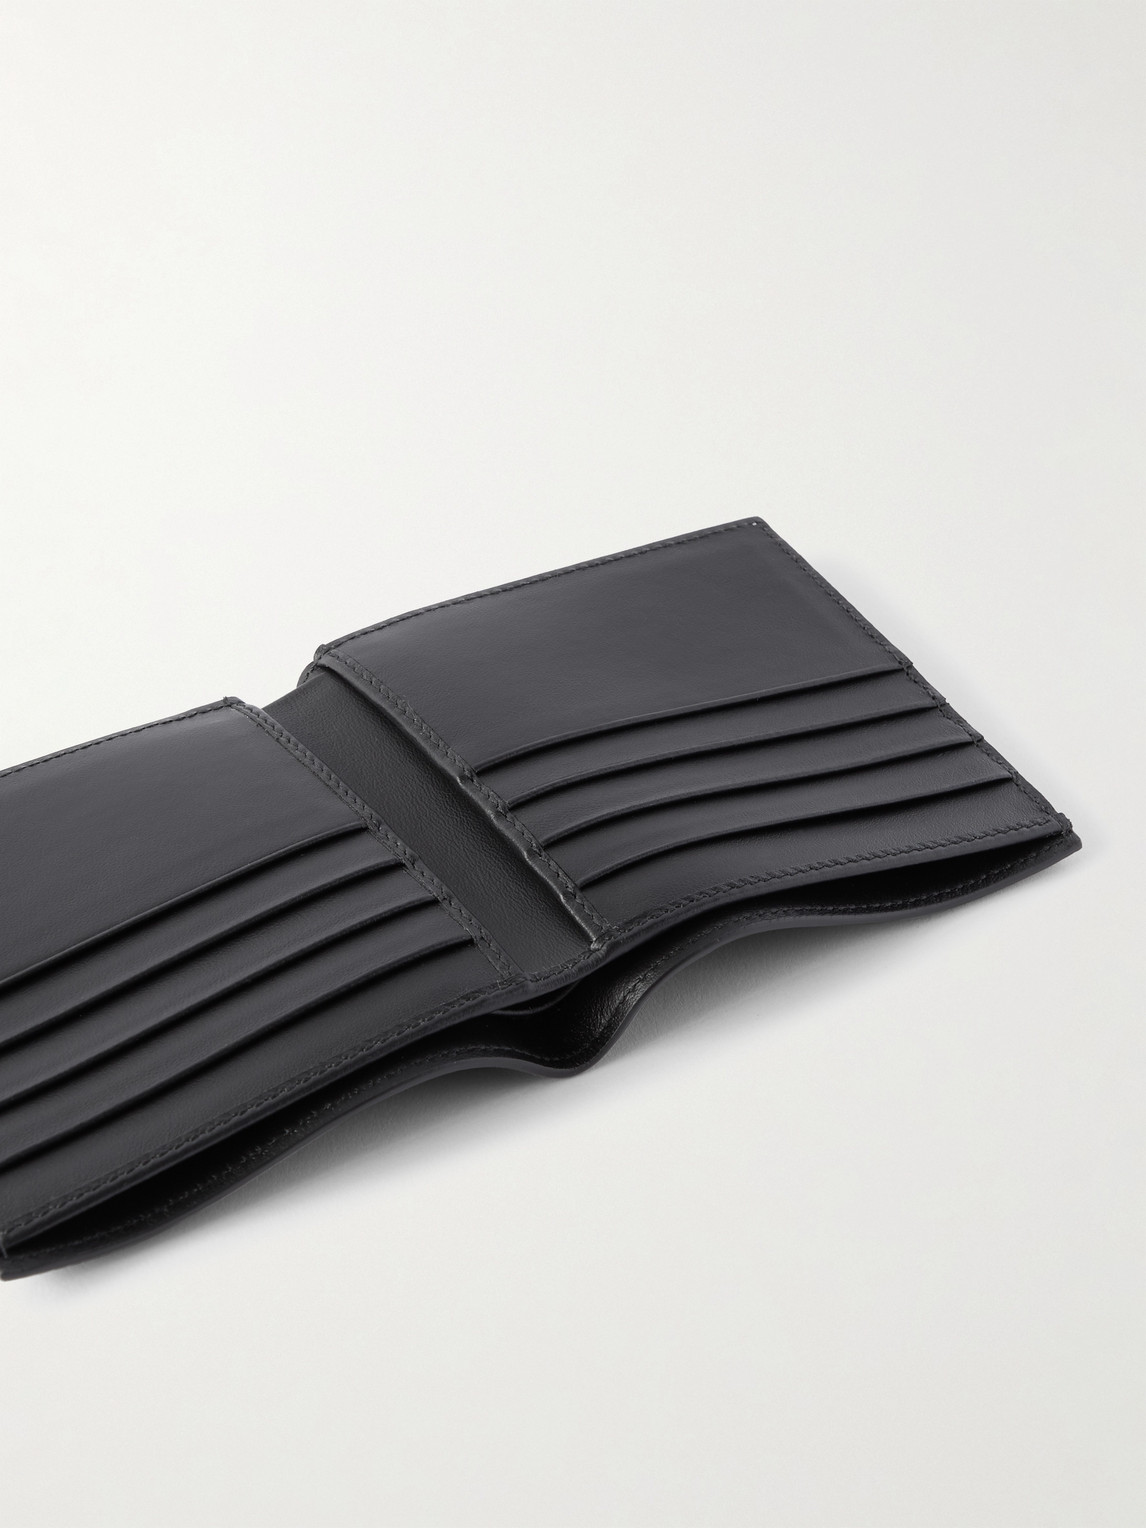 Shop Smythson Panama Cross-grain Leather Billfold Wallet In Black